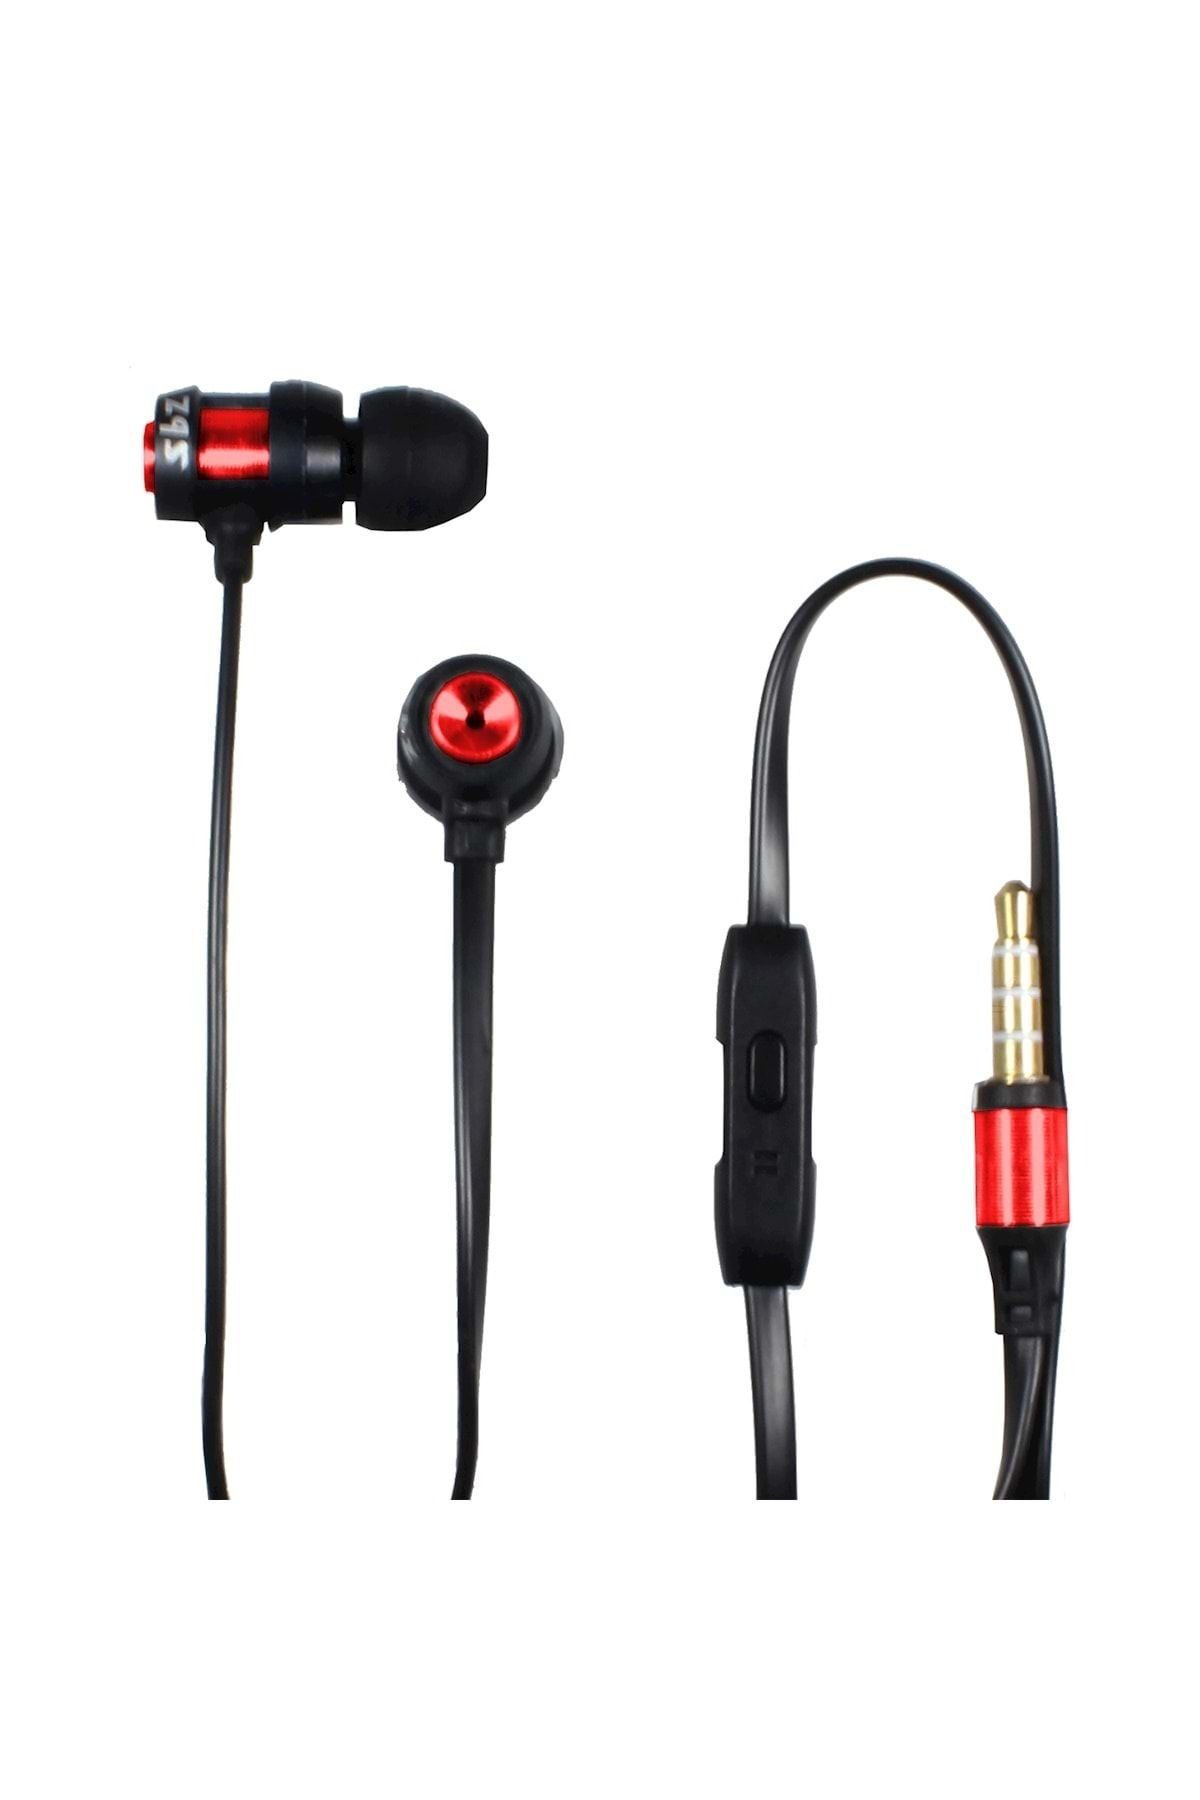 Subzero Pubg Mobile Oyuncu Kulaklığı Mikrofonlu Metal Kulaklık Ep84-kırmızı